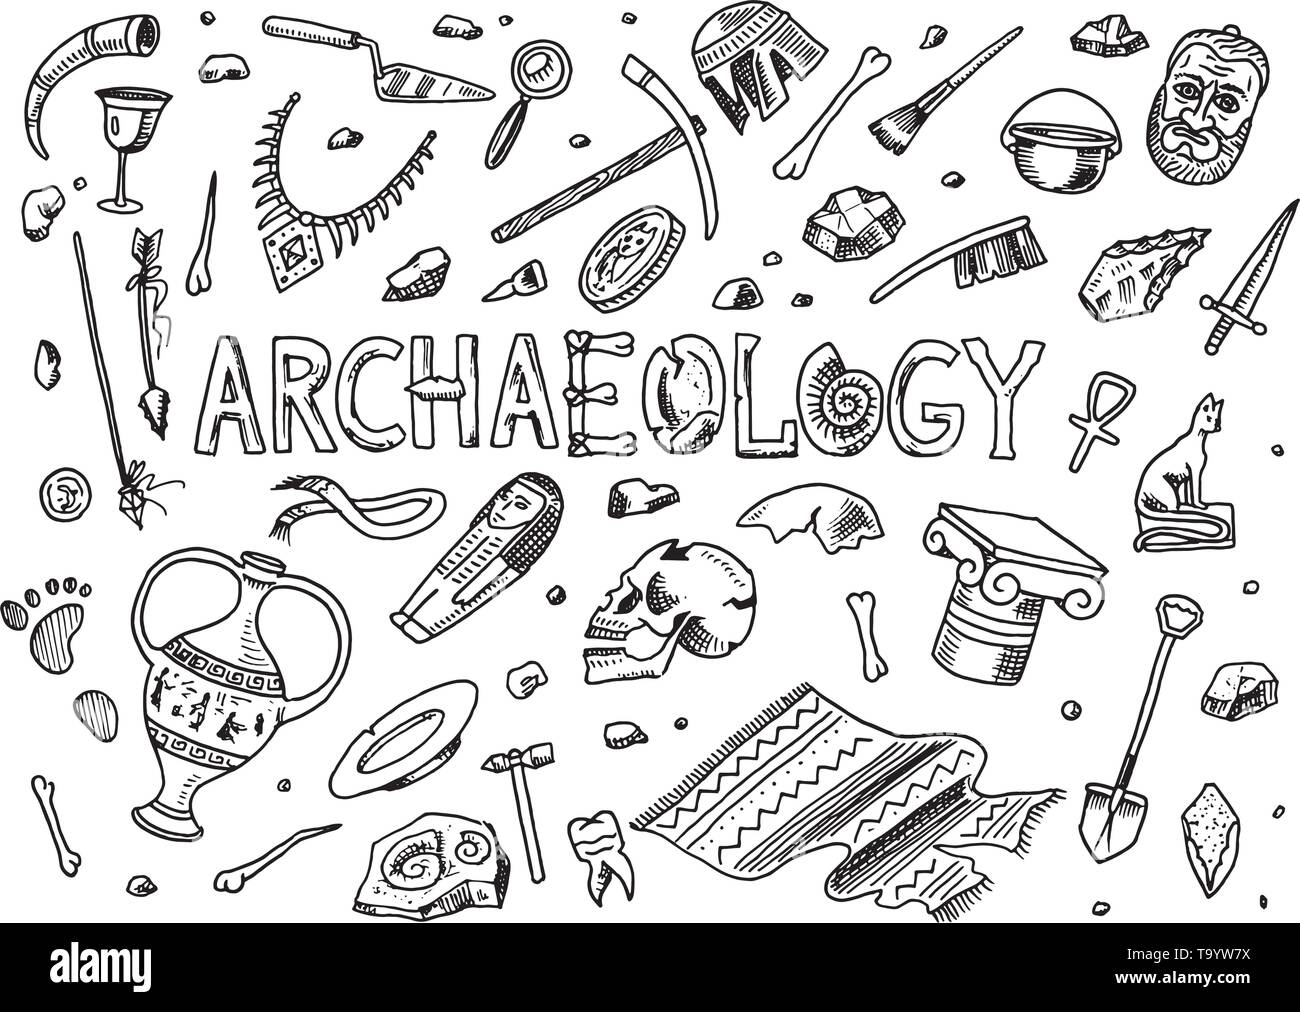 Ensemble d'outils d'archéologie, sciences de l'équipement, des artefacts. Les fossiles d'excavation et d'anciens OS. Doodle style croquis dessinés à la main. Illustration de Vecteur